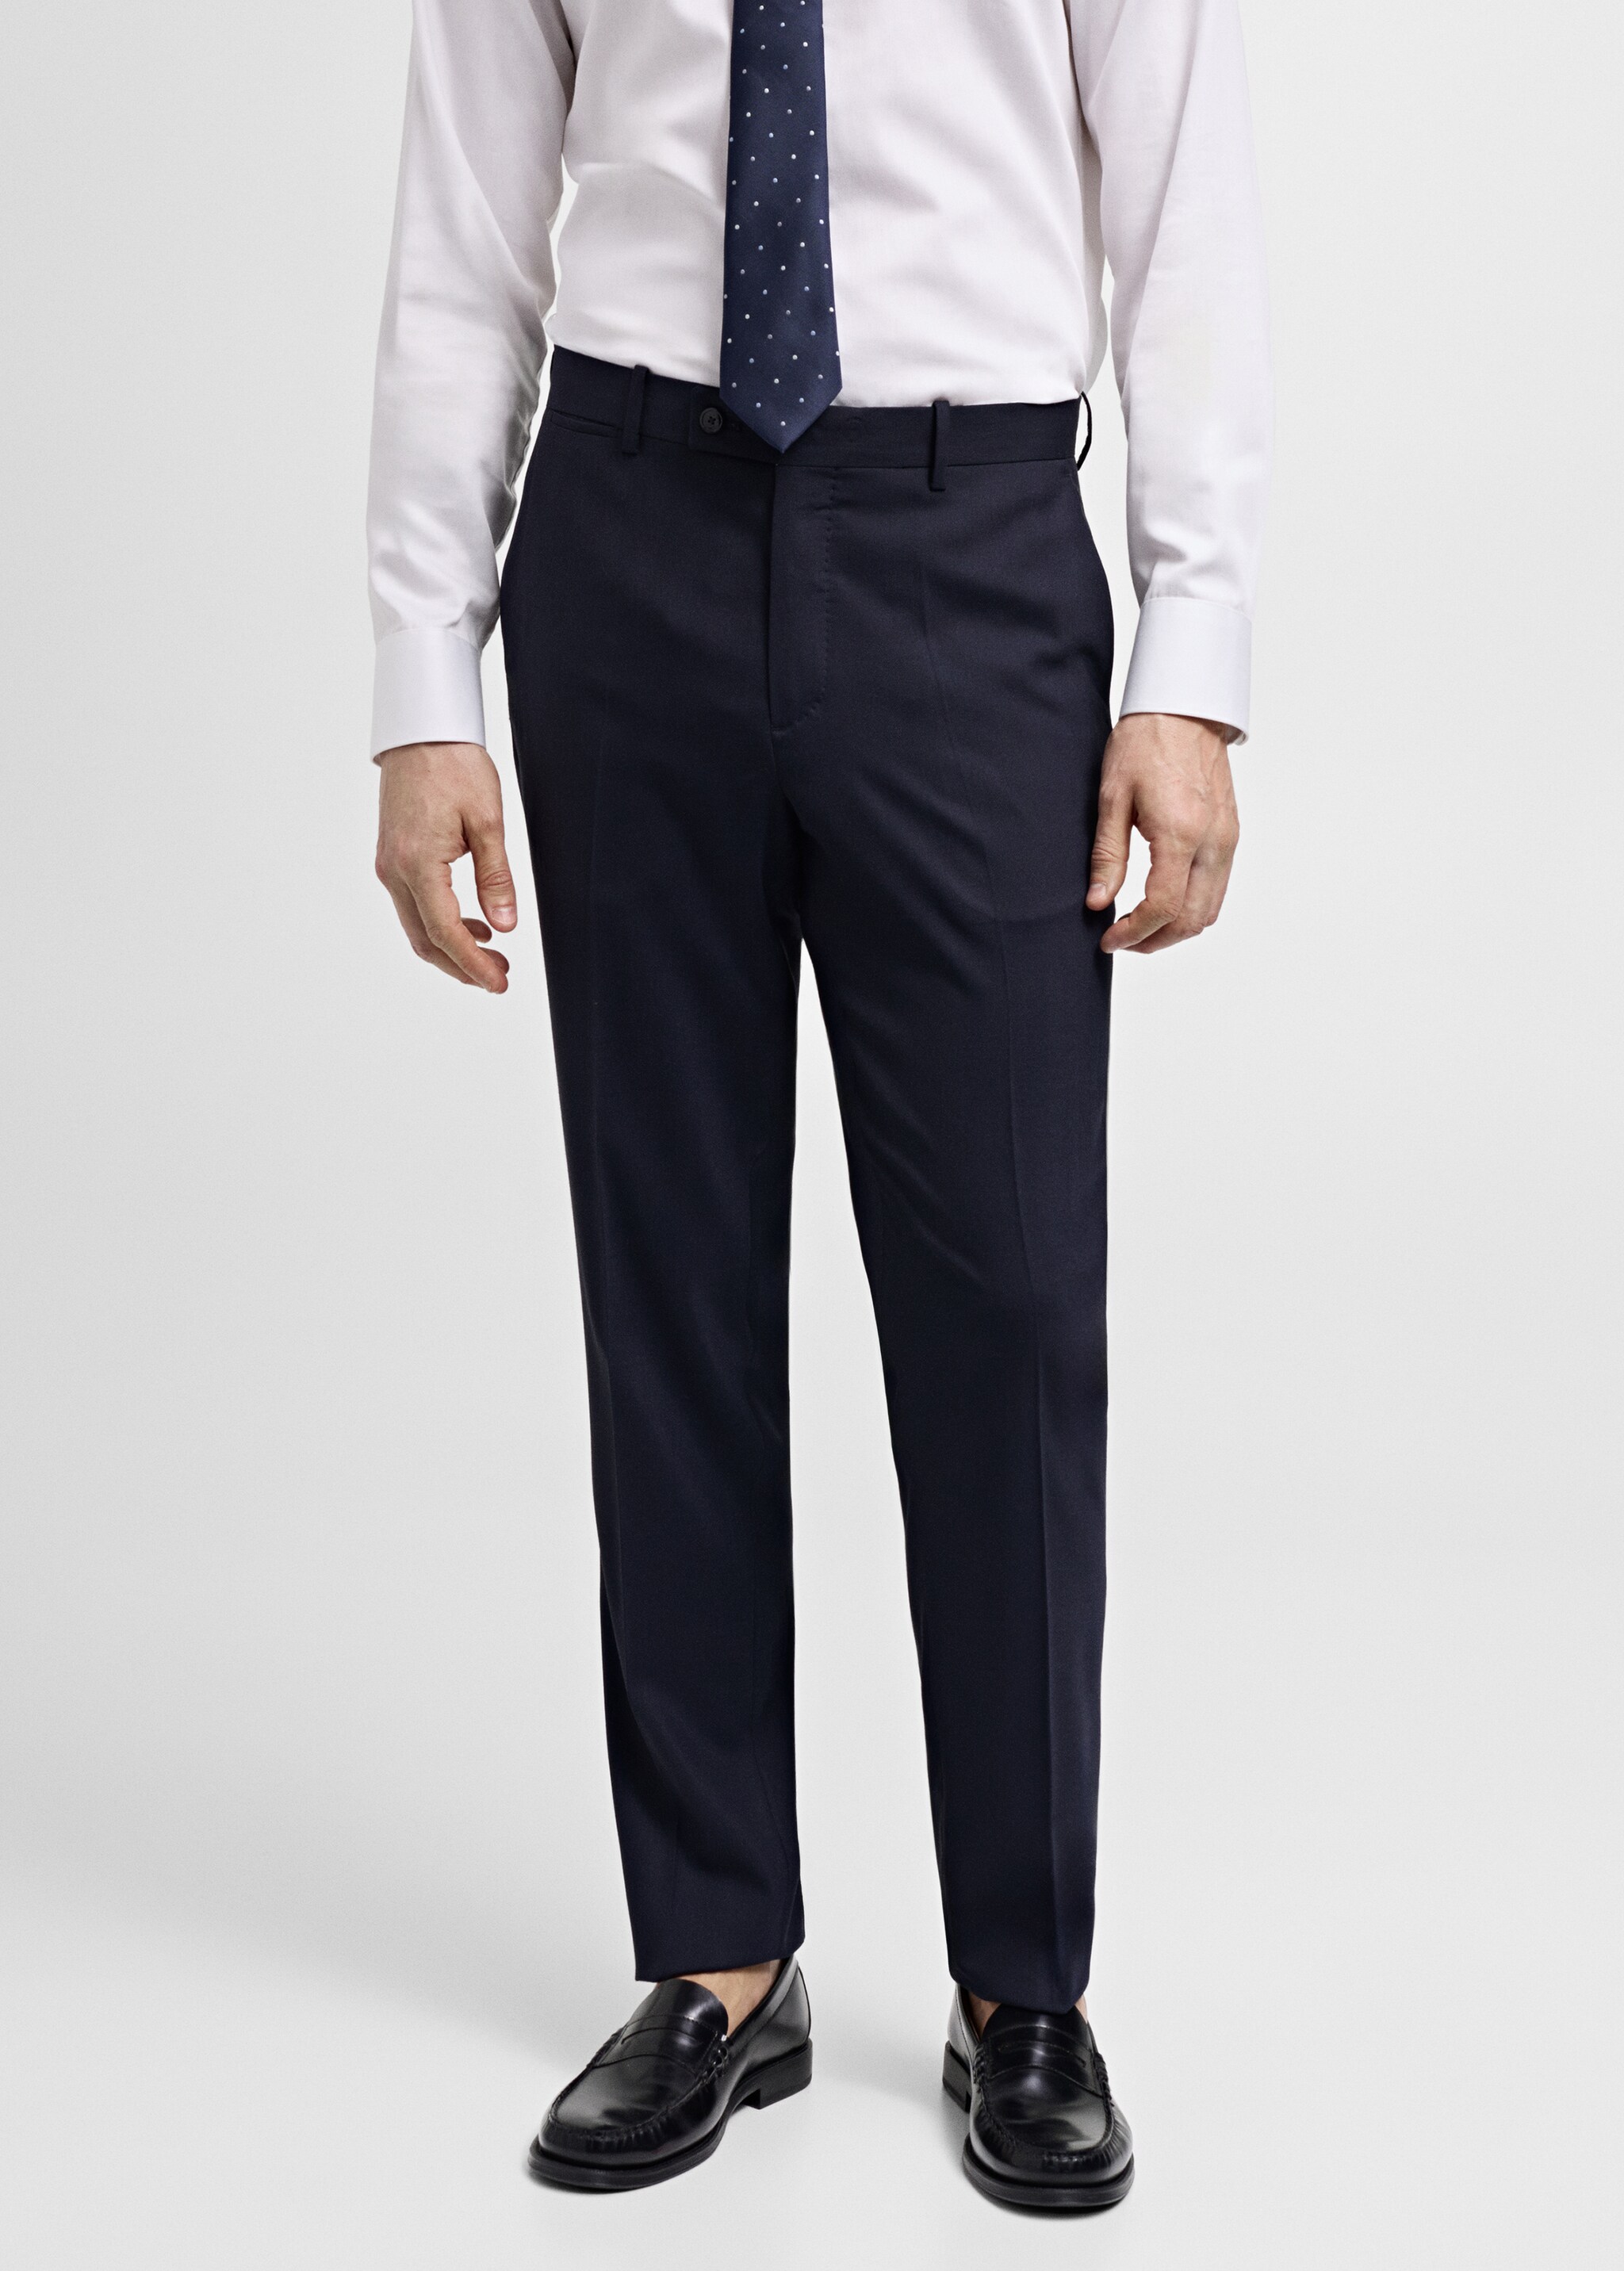 Pantalón traje slim fit lana fría - Plano medio